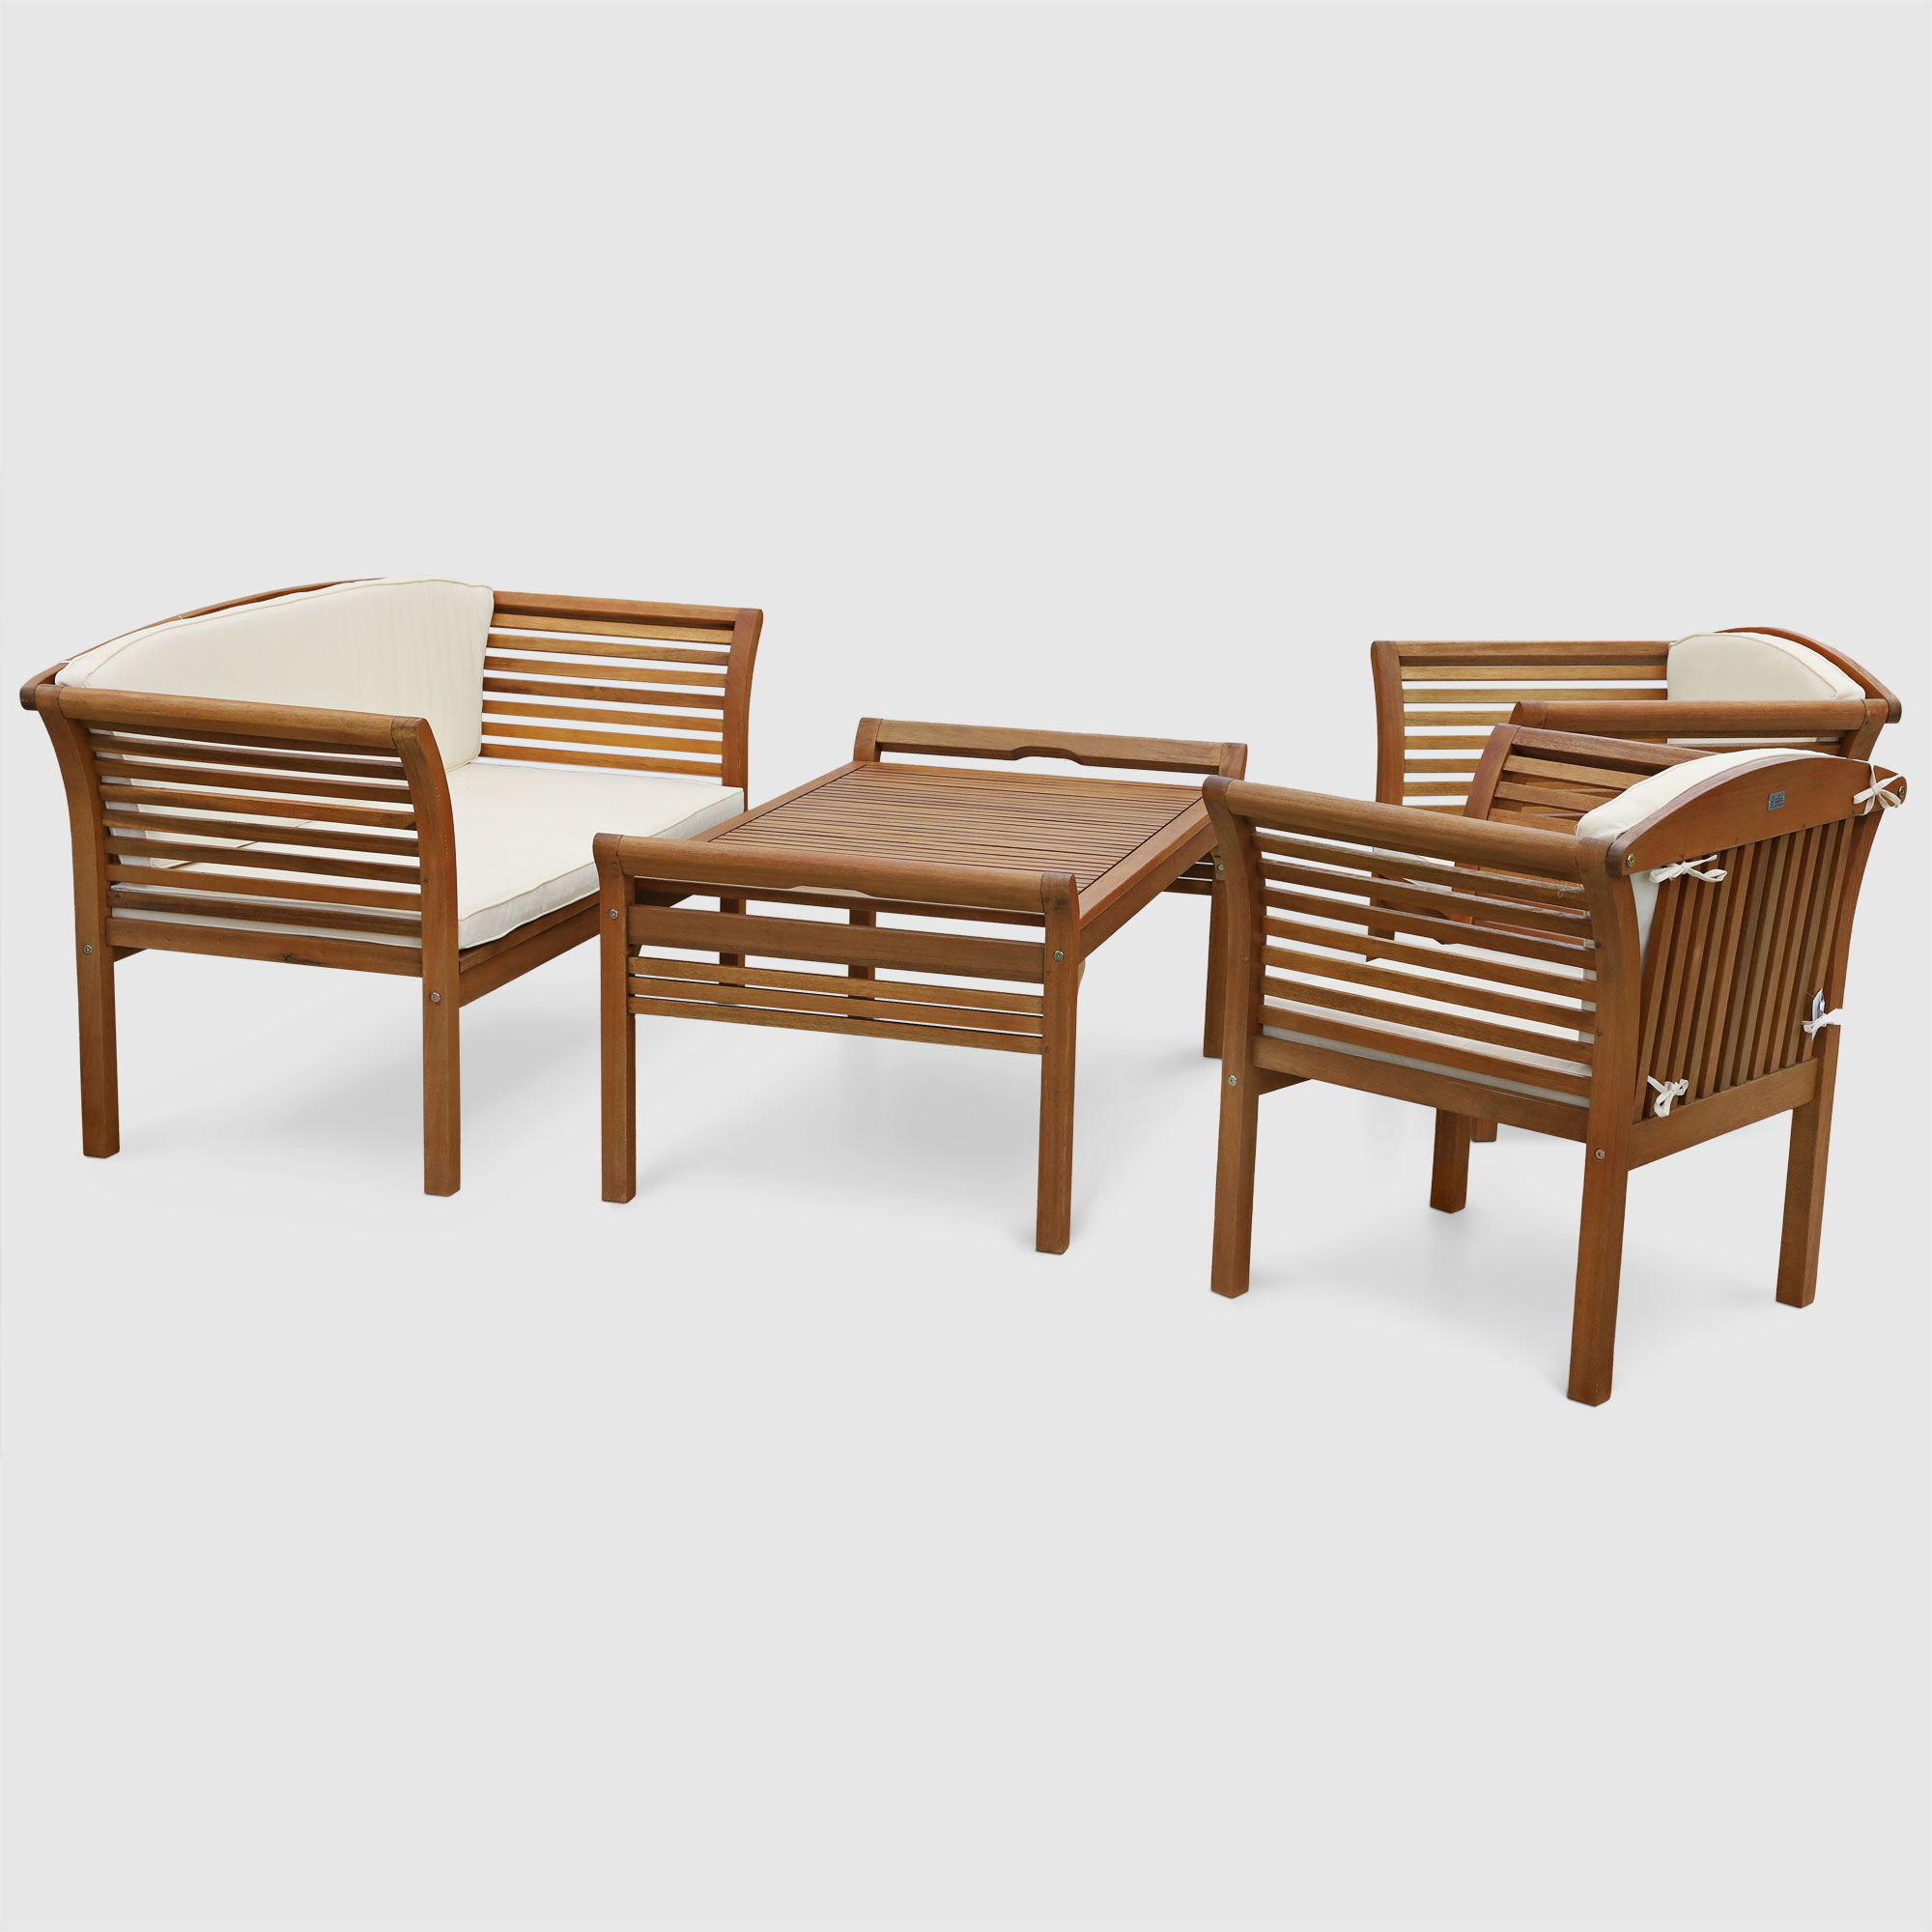 Комплект садовой мебели Degamo Malaga коричневый с бежевым из 4 предметов